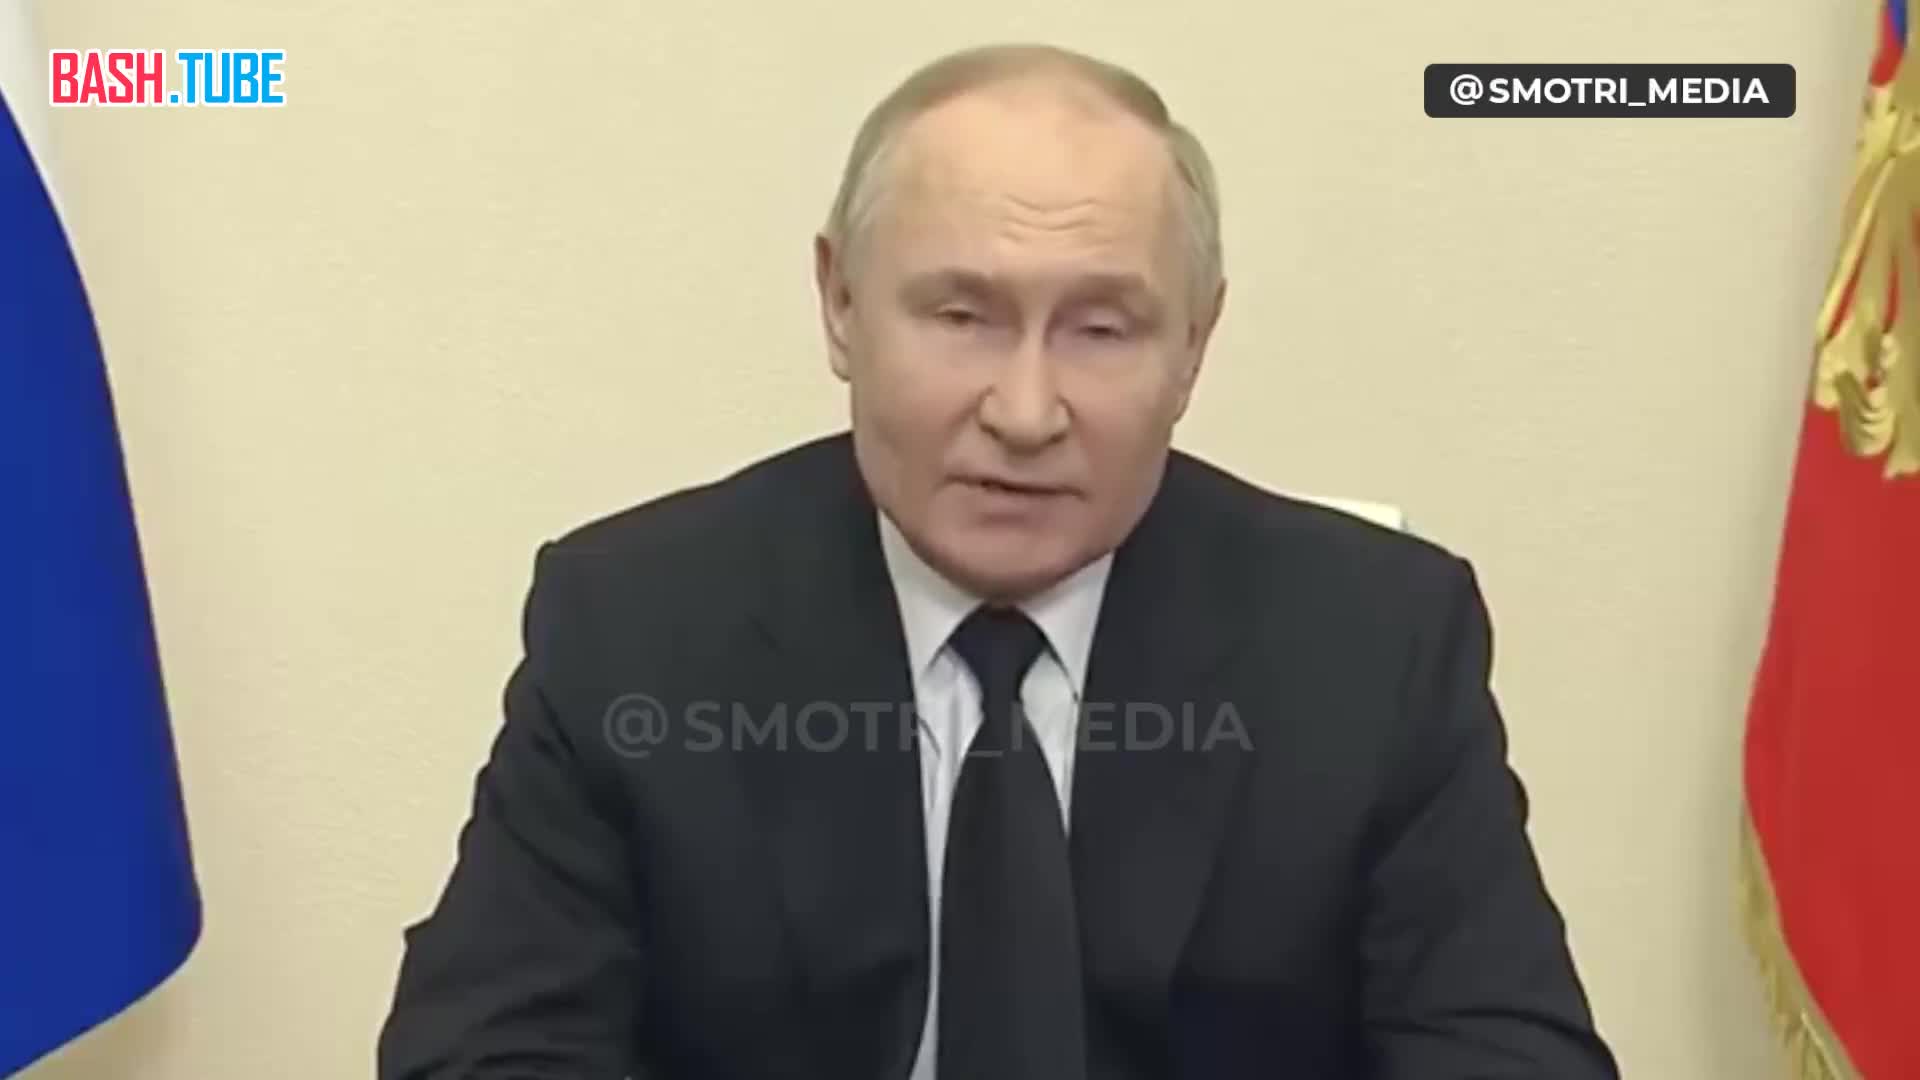  Путин назвал теракт кровавым и варварским, жертвами которого стали десятки неповинных людей